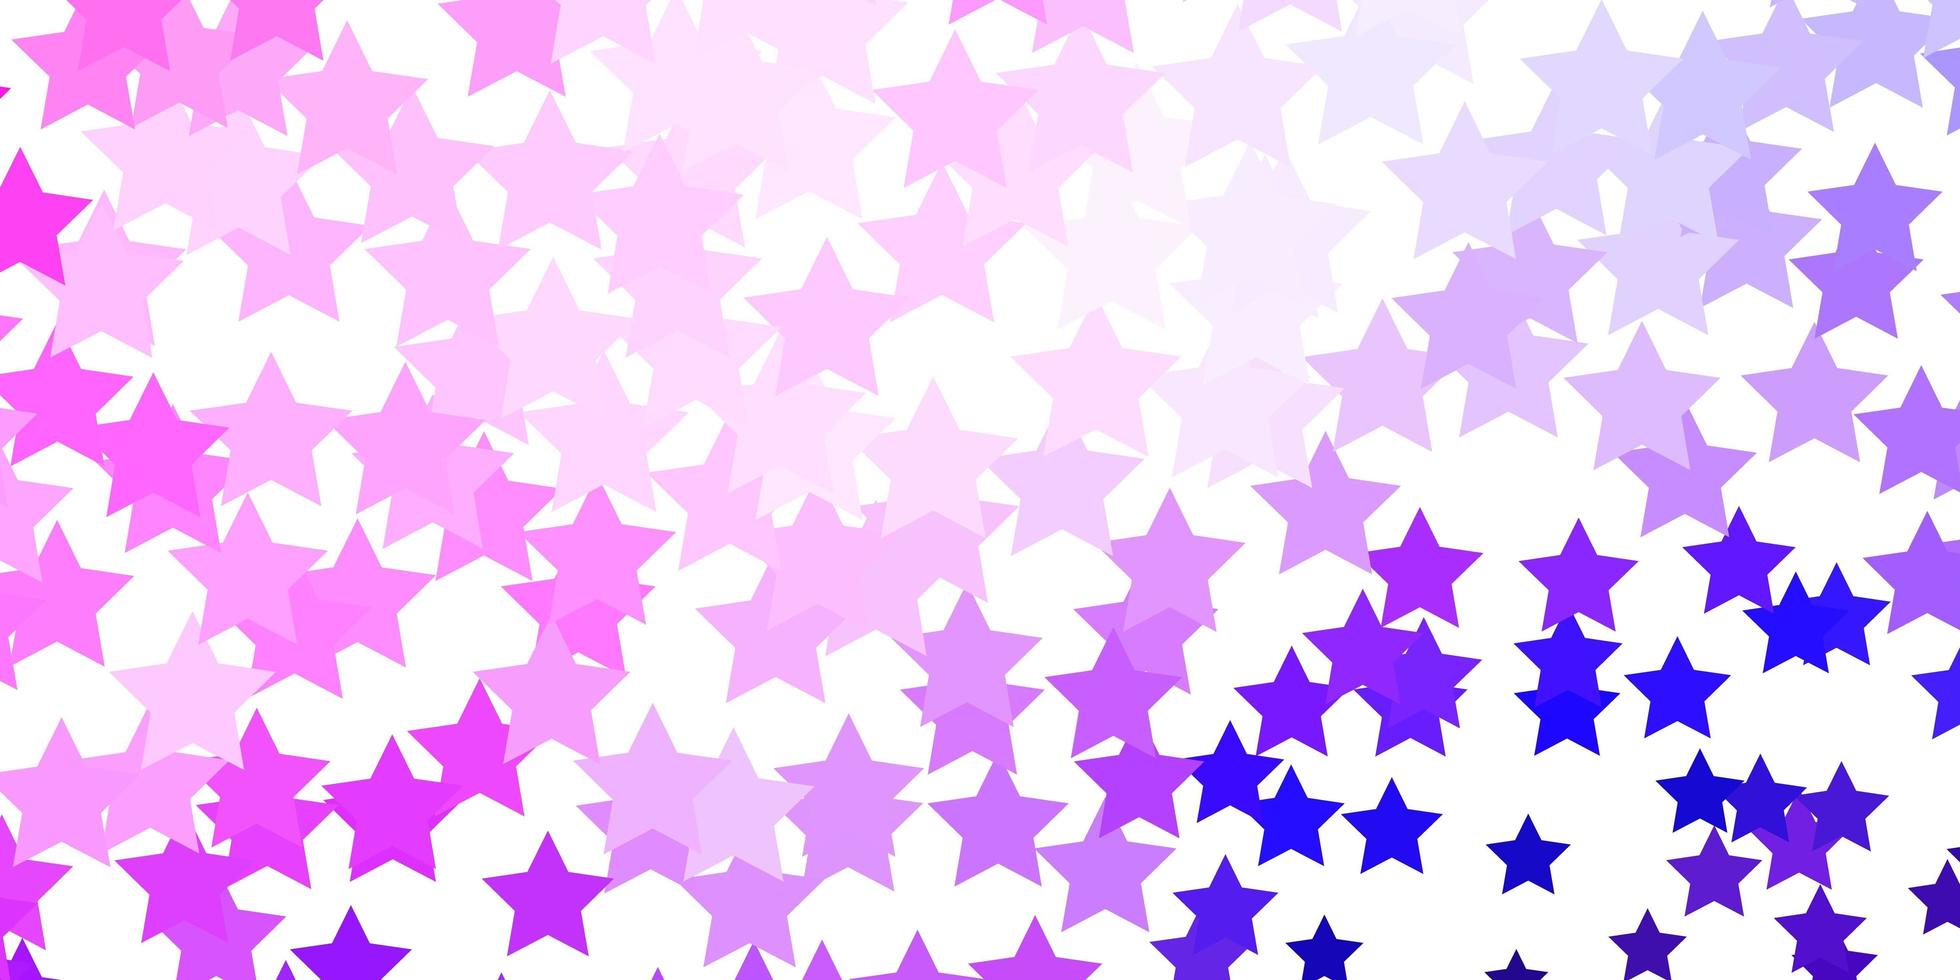 Fondo de vector violeta, rosa claro con estrellas pequeñas y grandes.